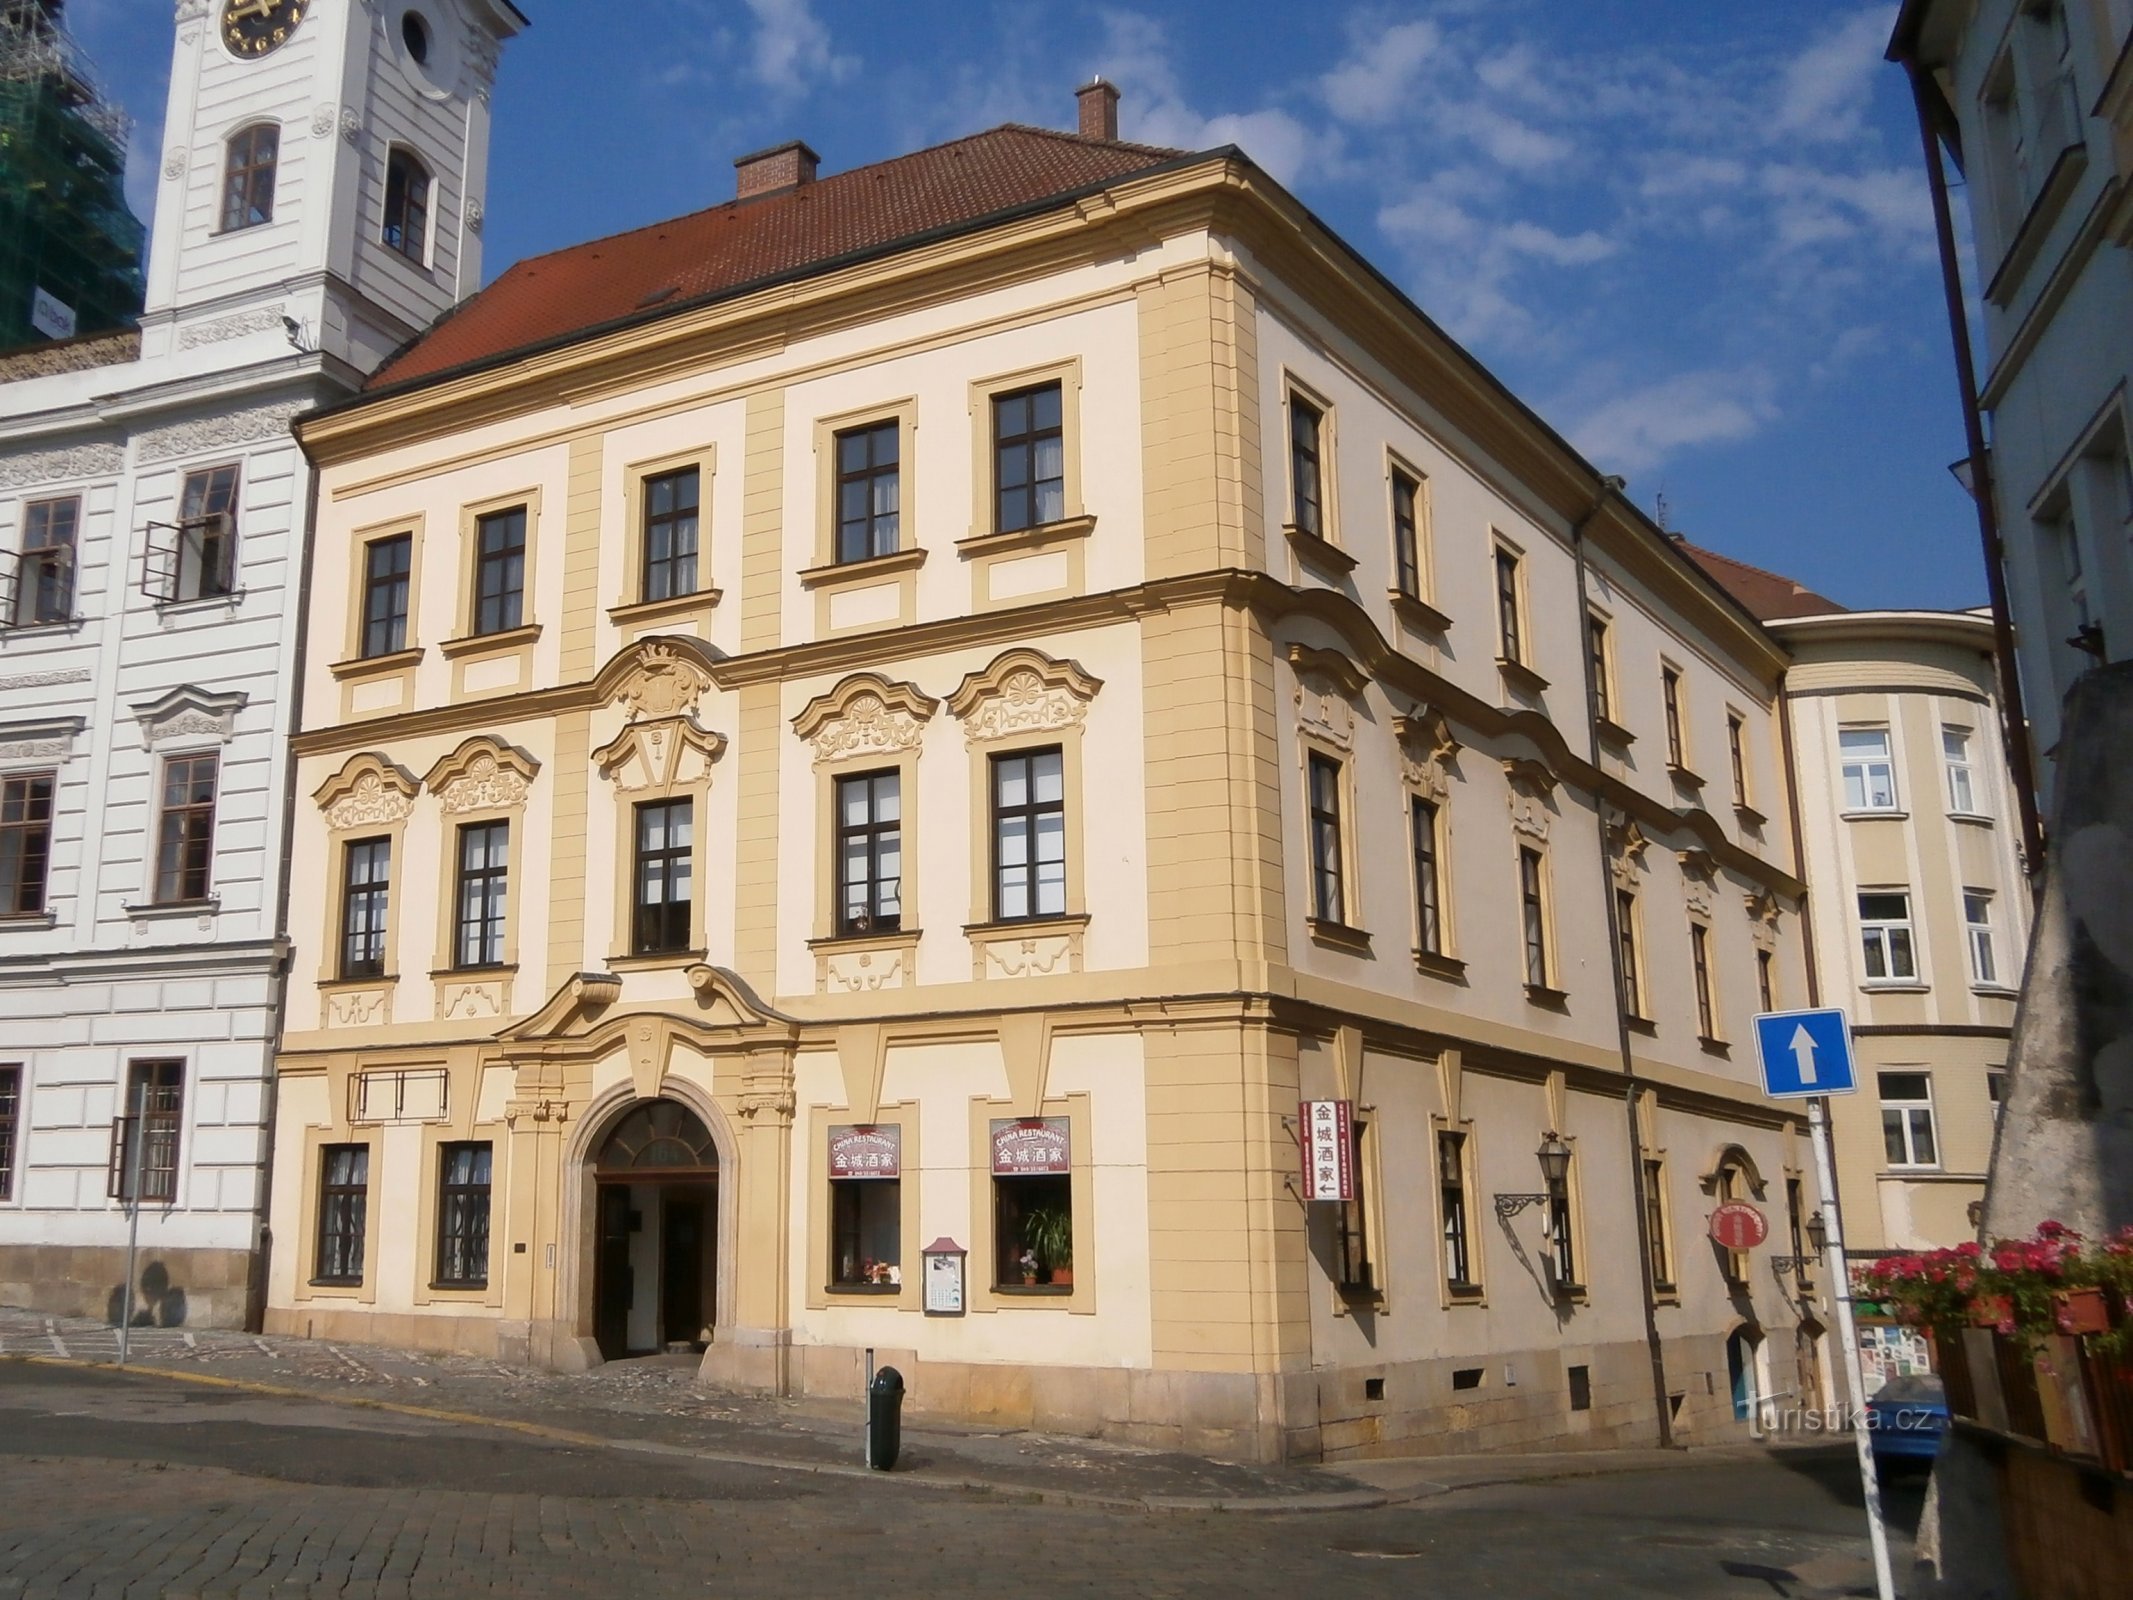 Velké náměstí nr. 164 (Hradec Králové, 8.7.2014 oktober XNUMX)